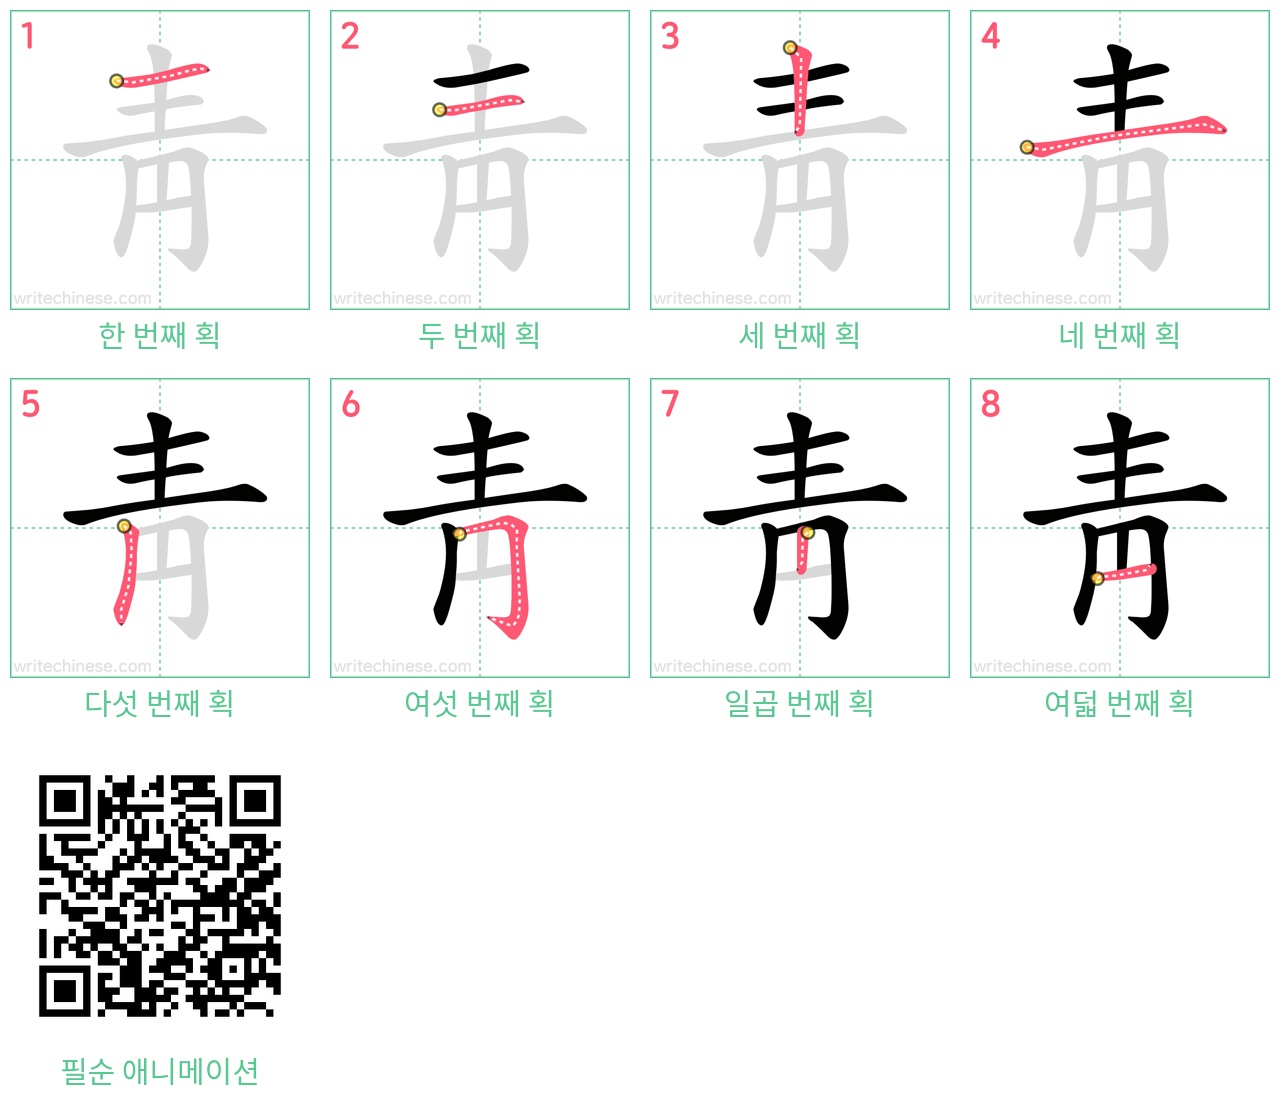 靑 step-by-step stroke order diagrams